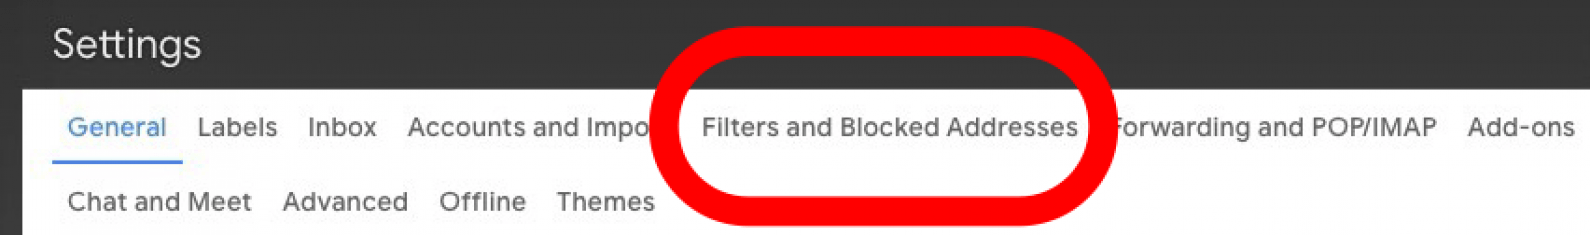 toque filtros y direcciones bloqueadas